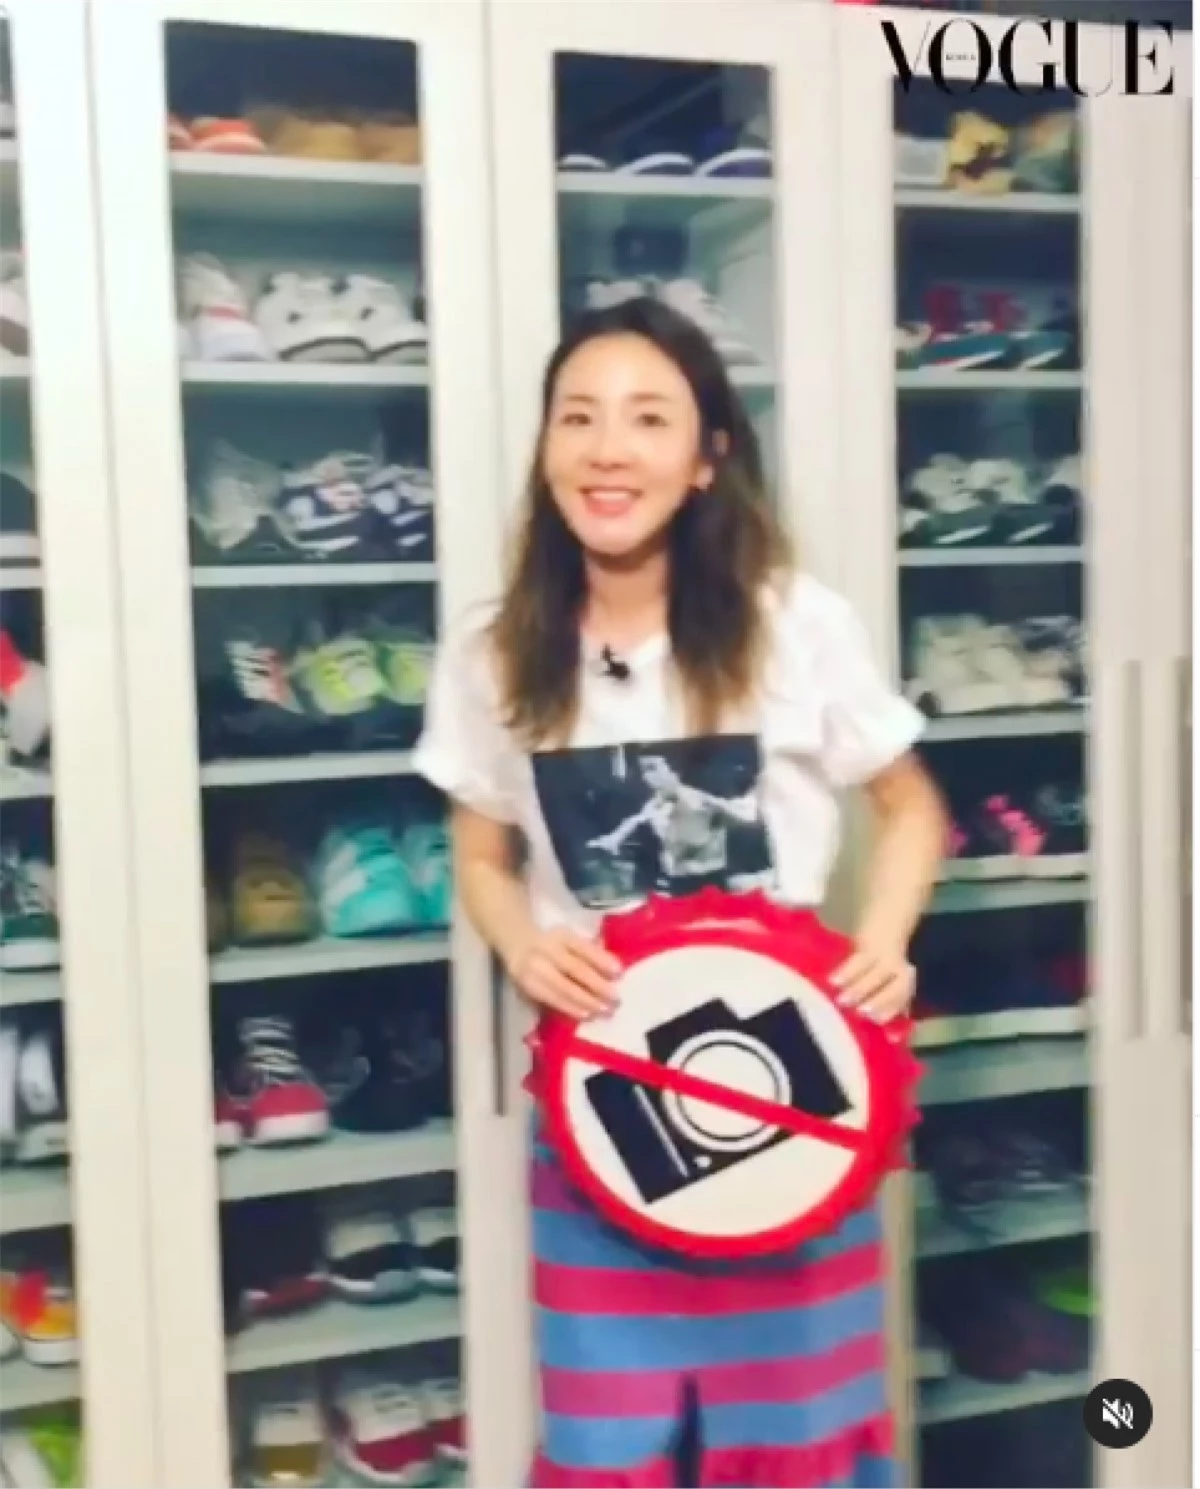 Dara cùng bộ sưu tập giày thể thao của mình (ảnh @VogueKorea)